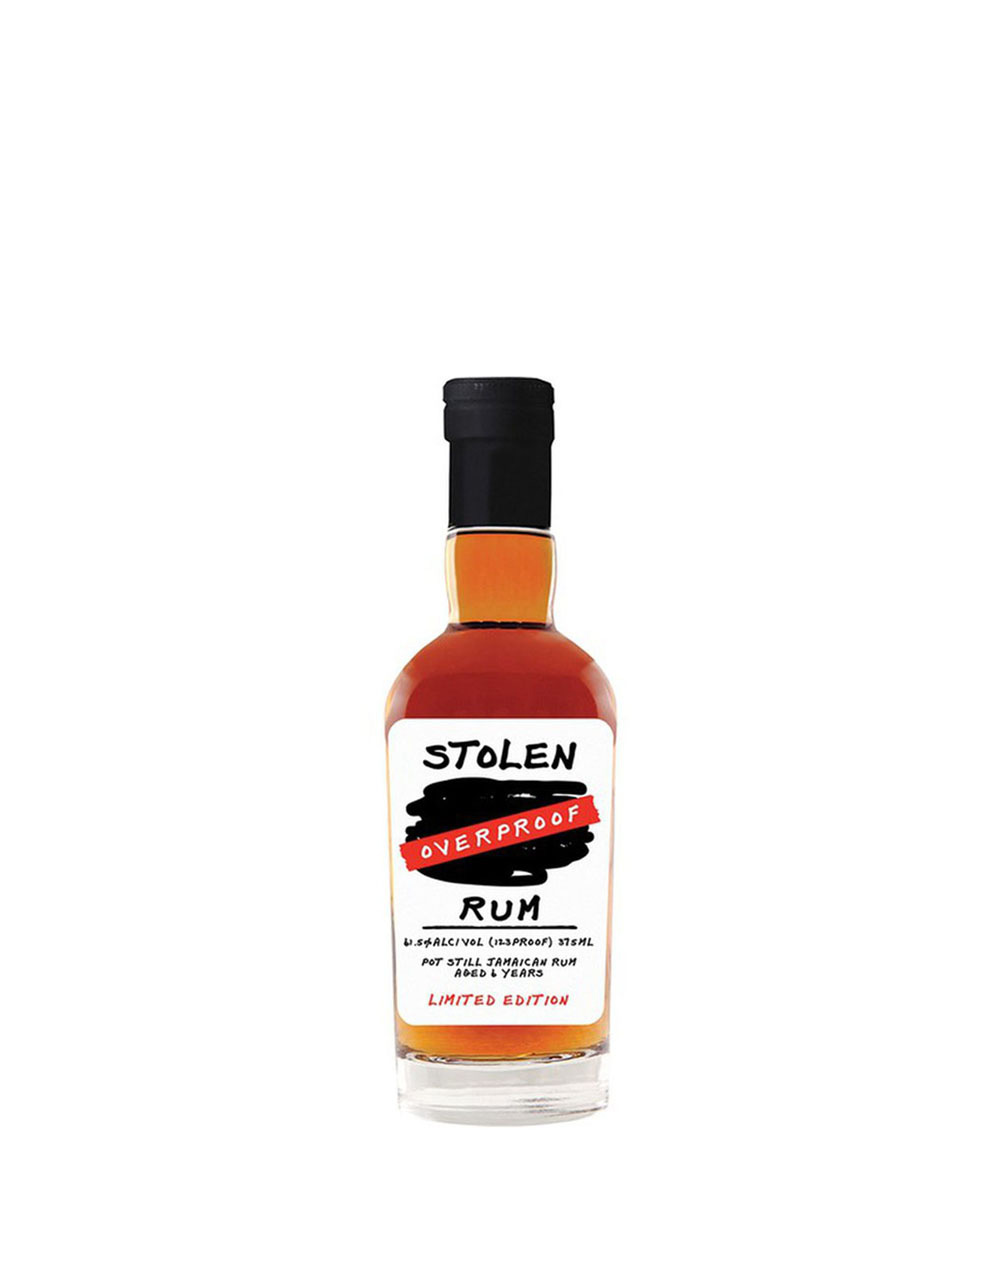 Stolen Overproof Limited Edition Rum